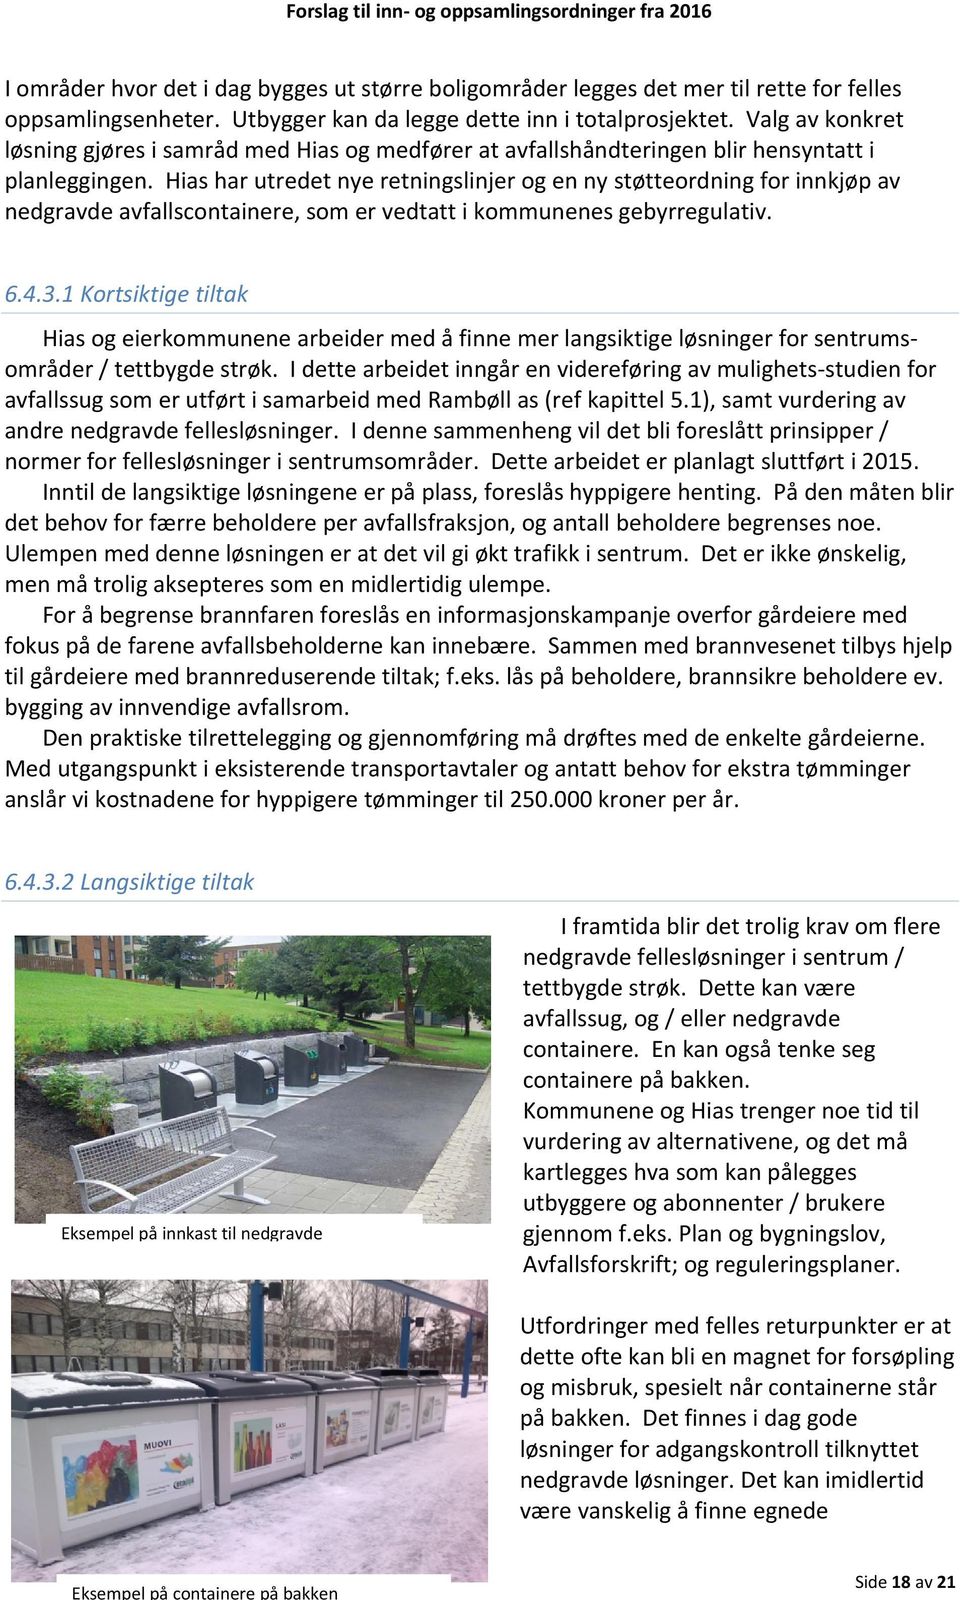 Hias har utredet nye retningslinjer og en ny støtteordning for innkjøp av nedgravde avfallscontainere, som er vedtatt i kommunenes gebyrregulativ. 6.4.3.